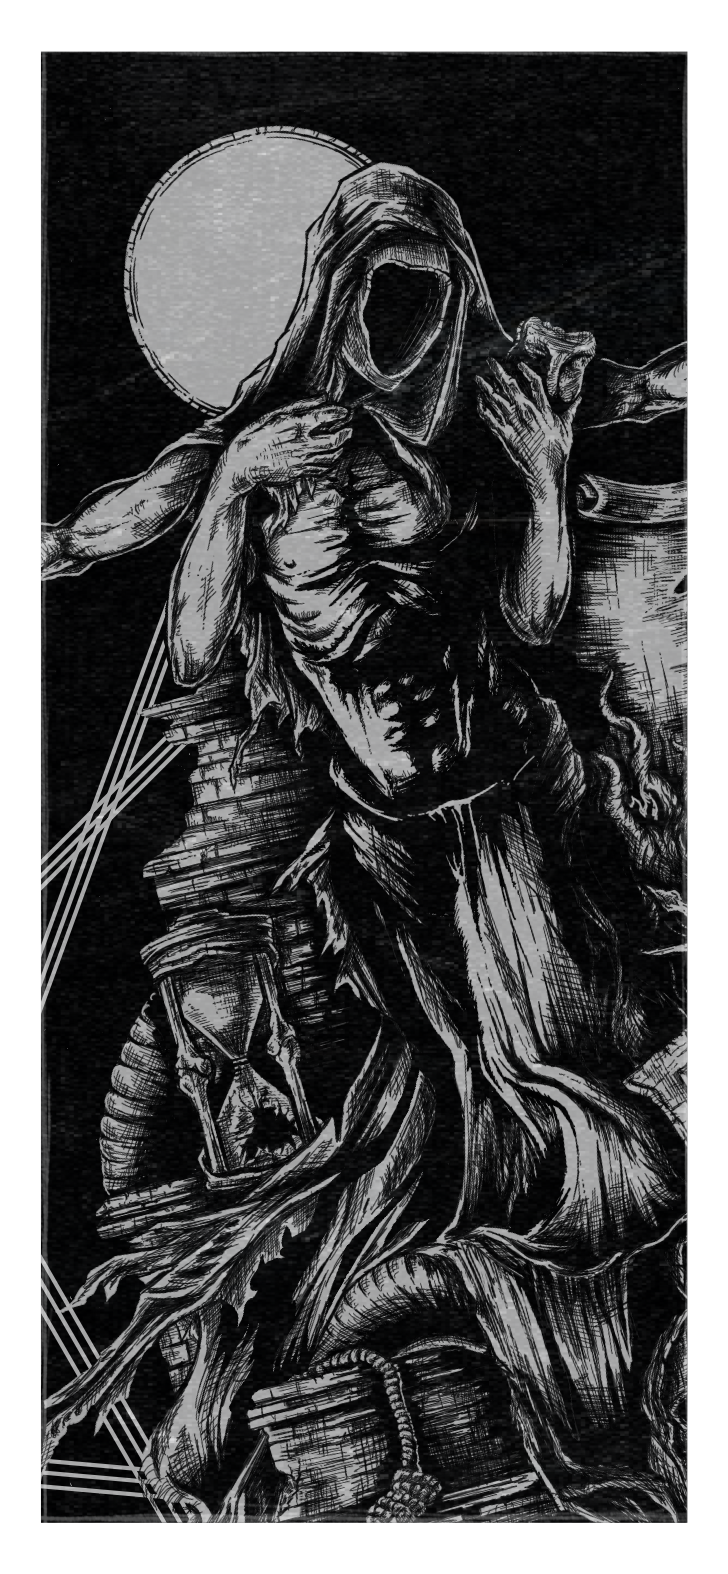 Ein Detailbild des Album Artworks zu Betrayal - Disorder Remains, das eine Statur auf dunklem Hintergrund zeigt, um die verschiedene Objekte wie ein Schild, Totenköpfe, eine Schlange, eine Fackel, eine Schriftrolle, eine Sanduhr, einen Strick und eine Mauer zeigt.